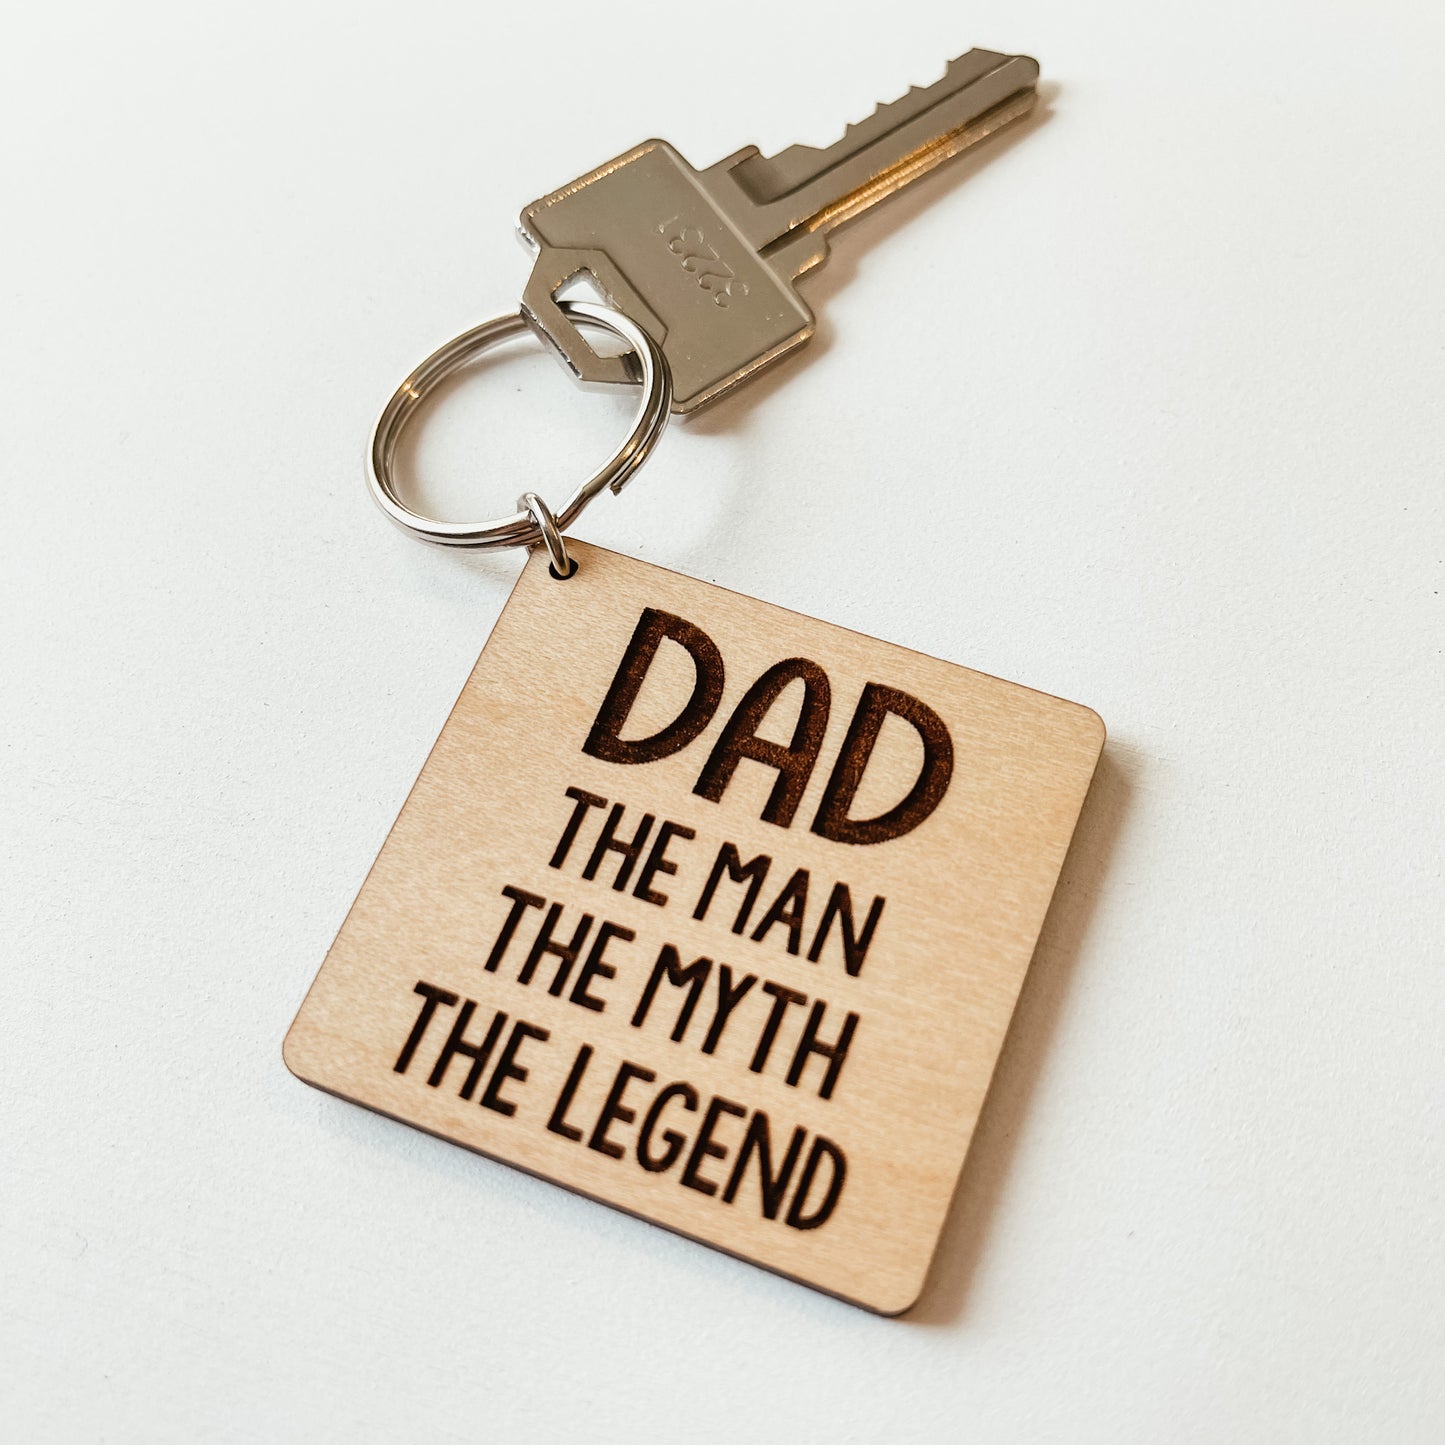 Dad - Man, Myth, Legend Keychain